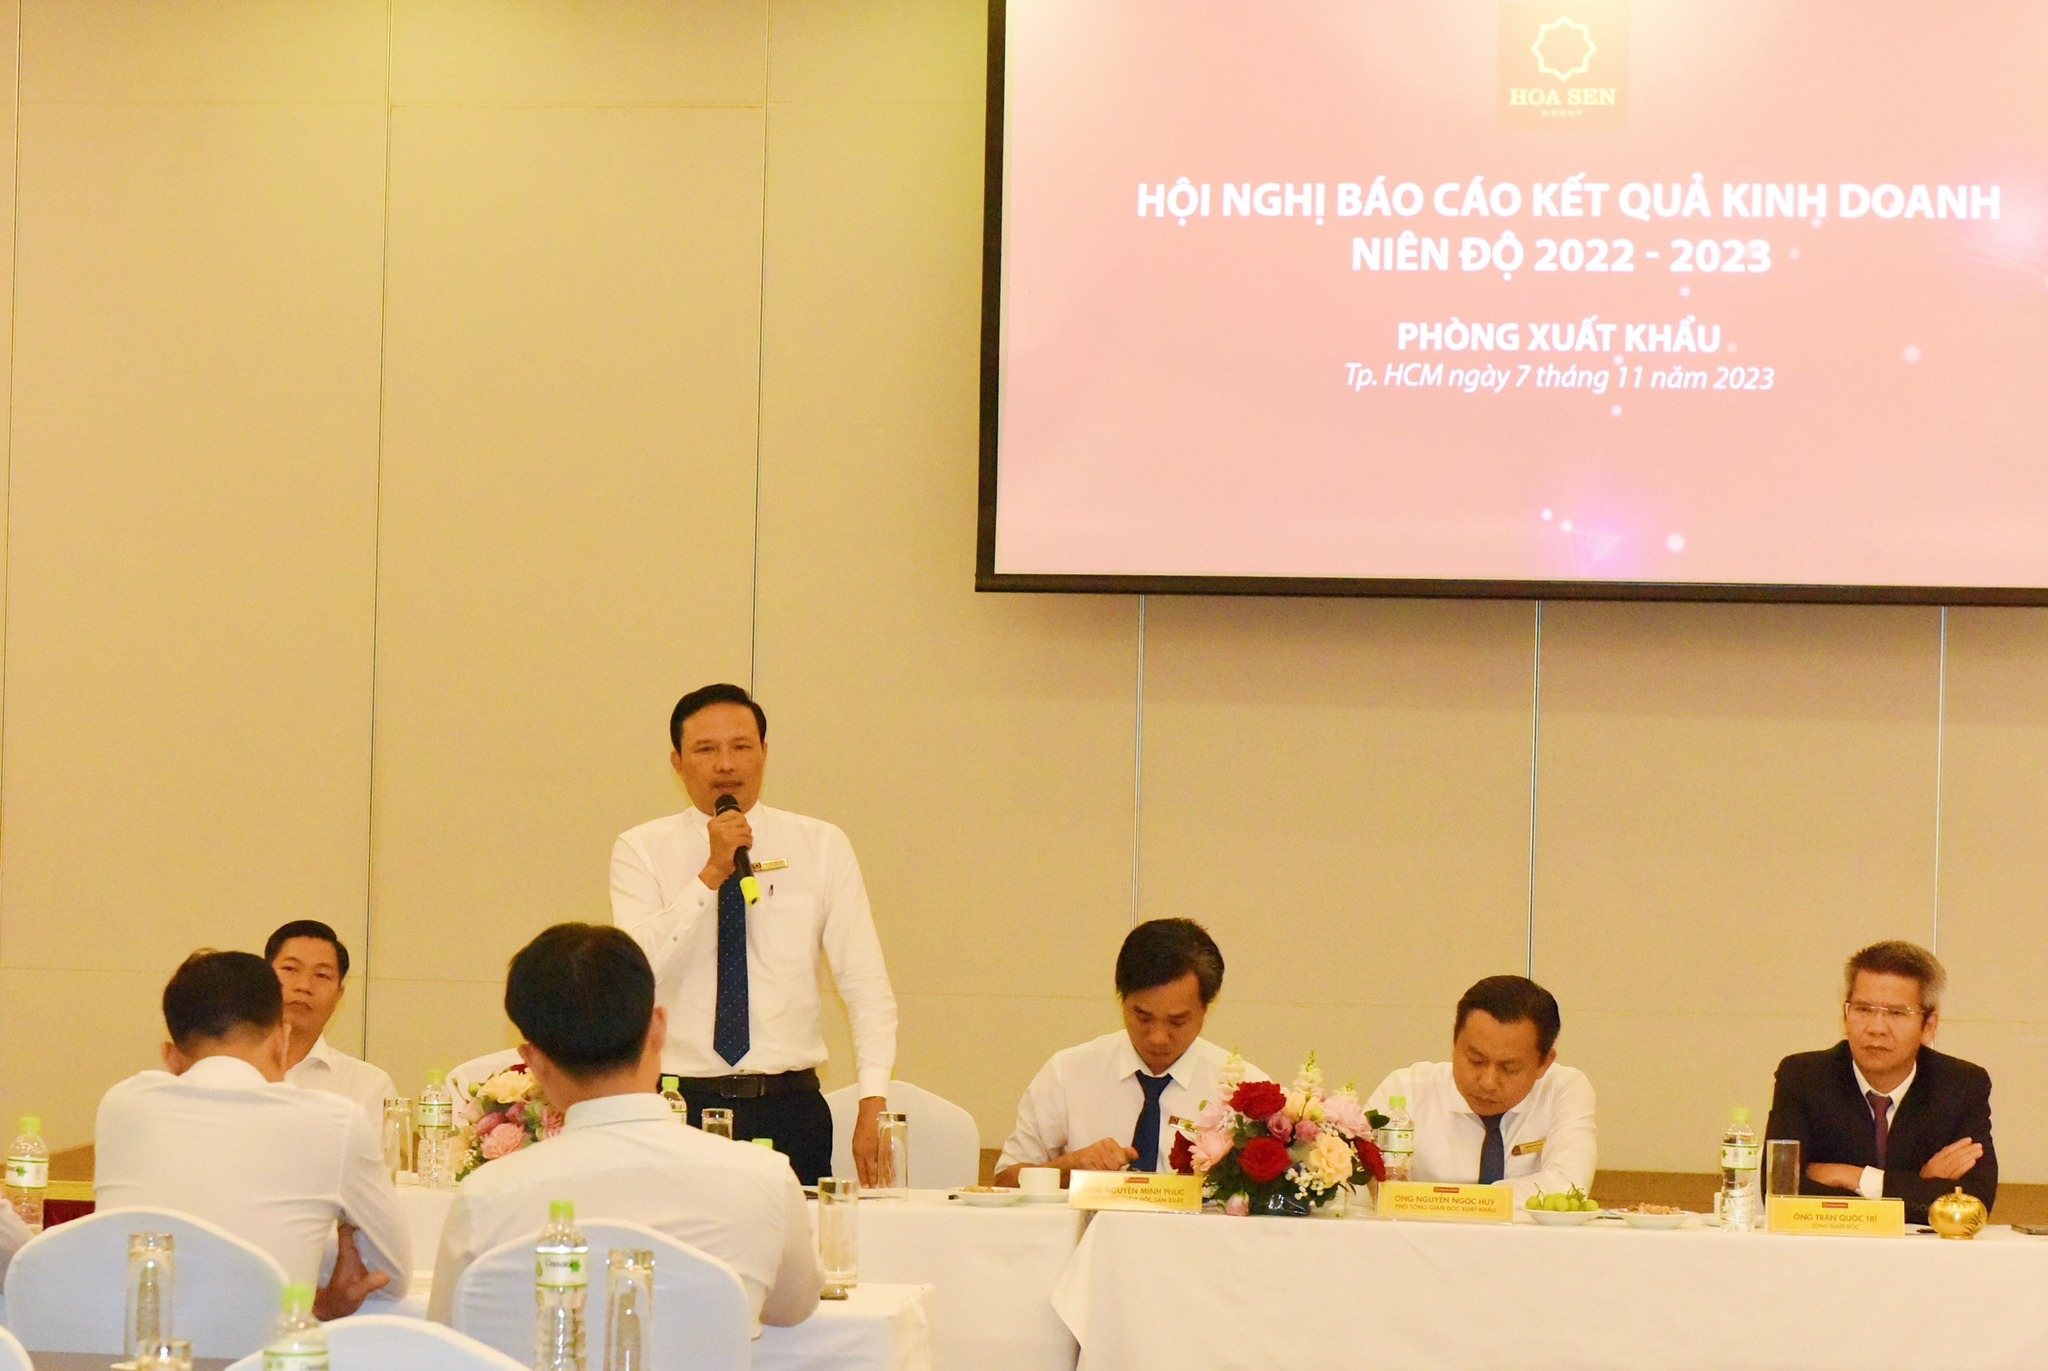 Tập đoàn Hoa Sen tổ chức Hội nghị Báo cáo Kết quả kinh doanh Niên độ 2022 - 2023 - Phòng Xuất khẩu 3